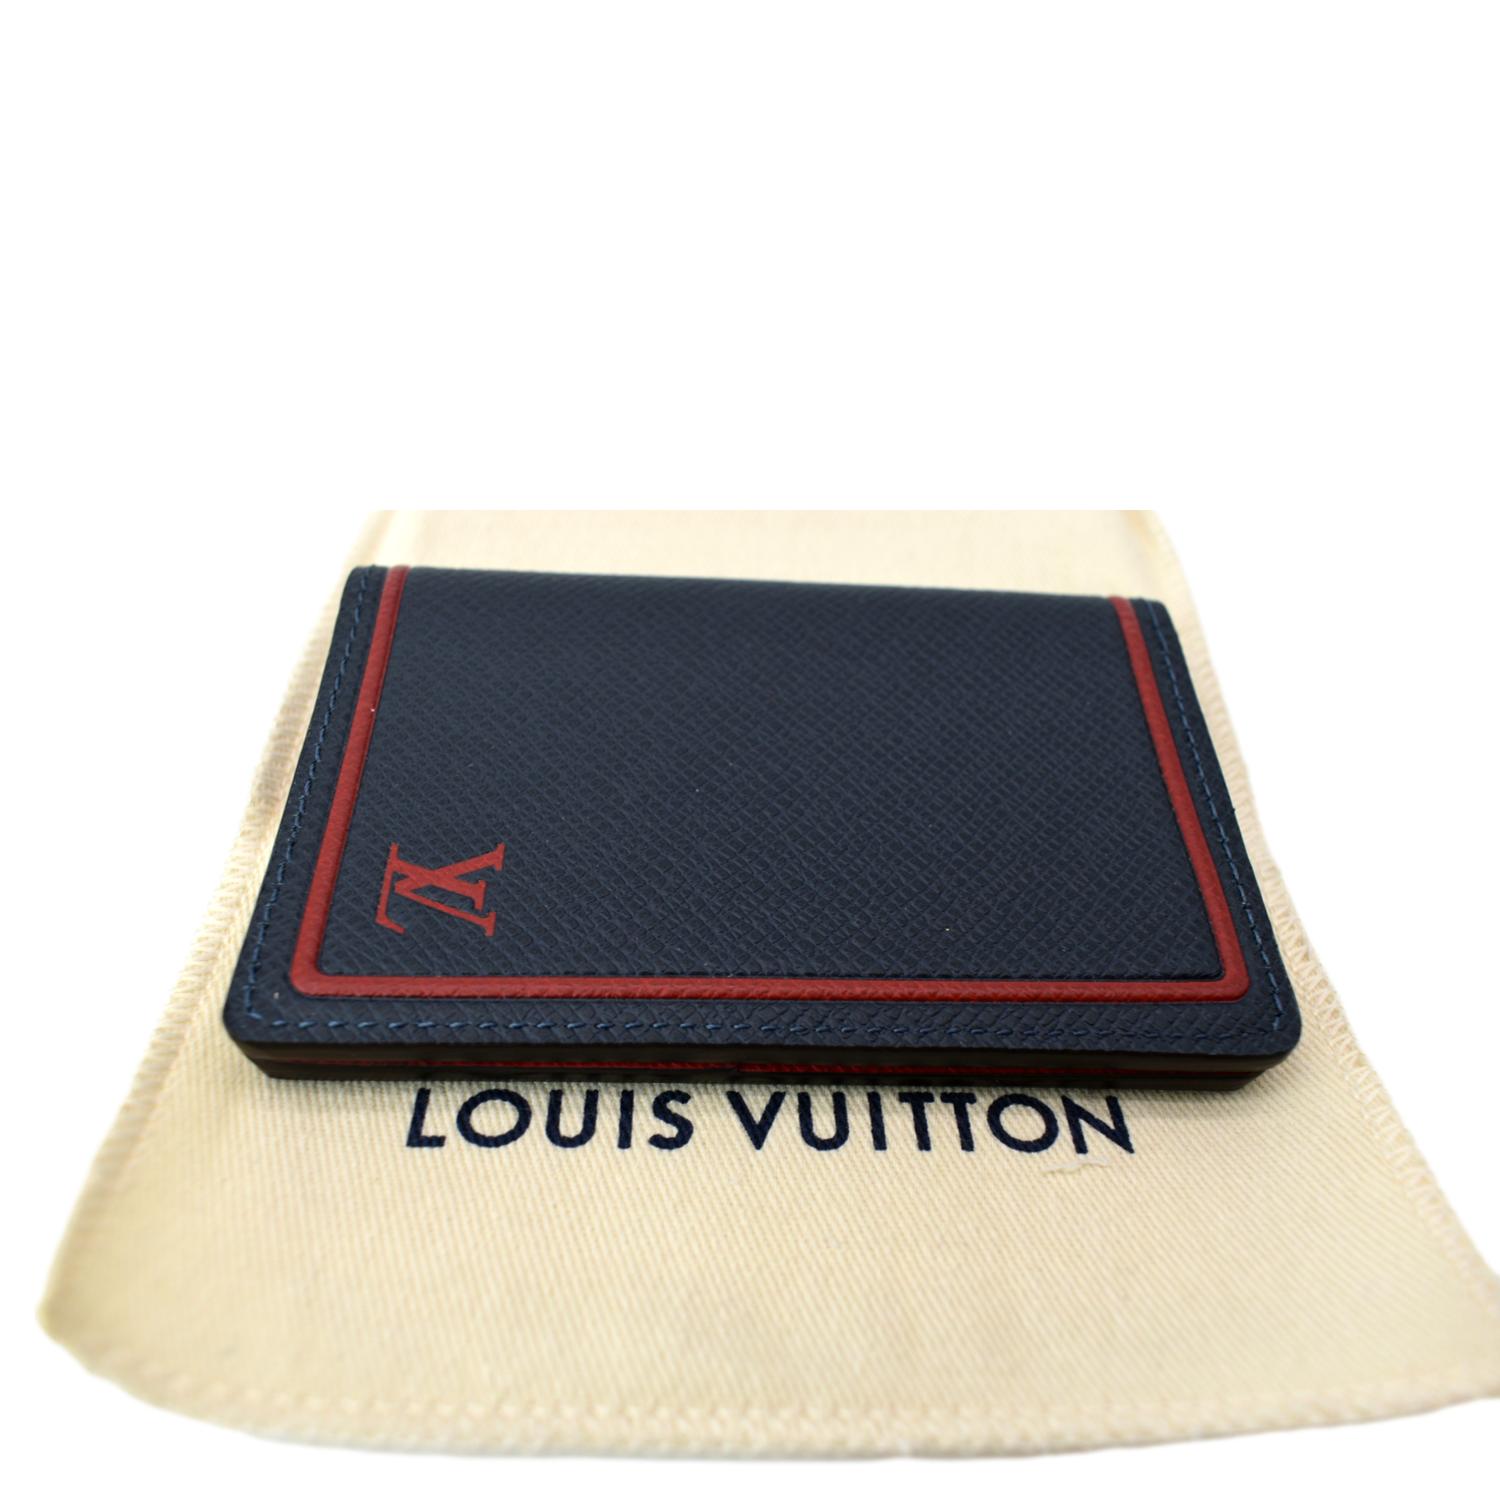 💐Louis Vuitton Foliage Pocket Organizer💐